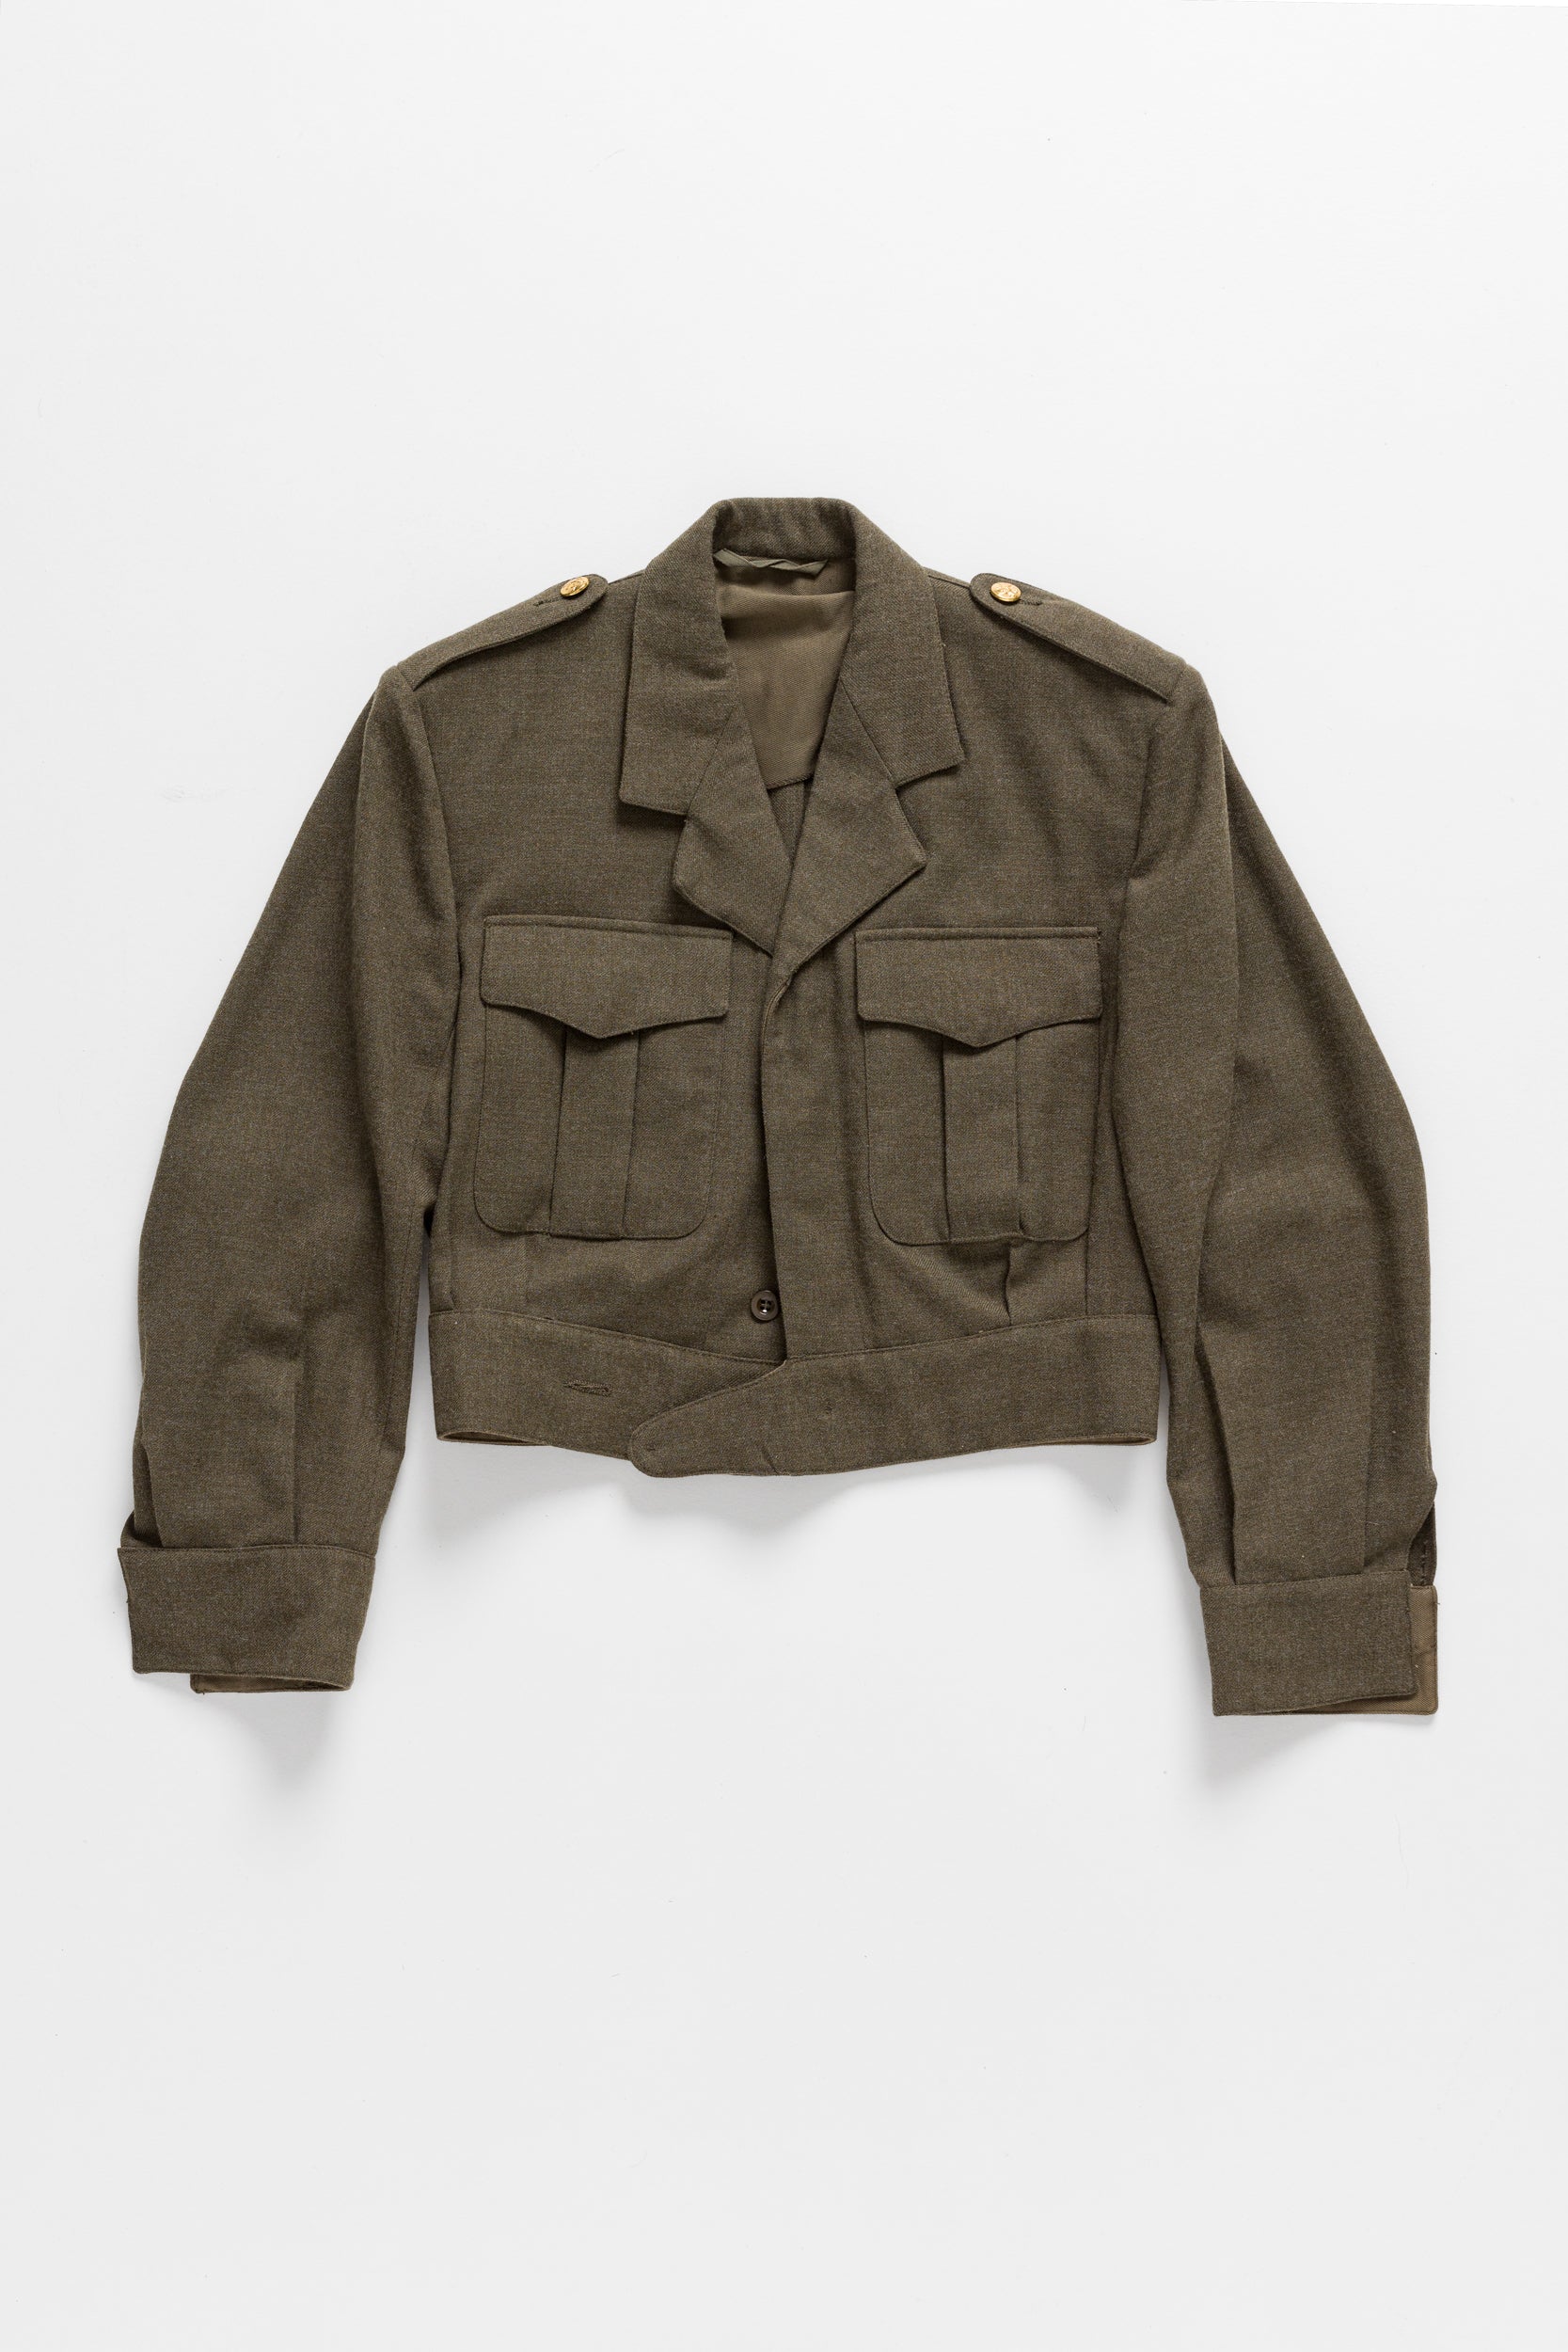 Army women’s jacket